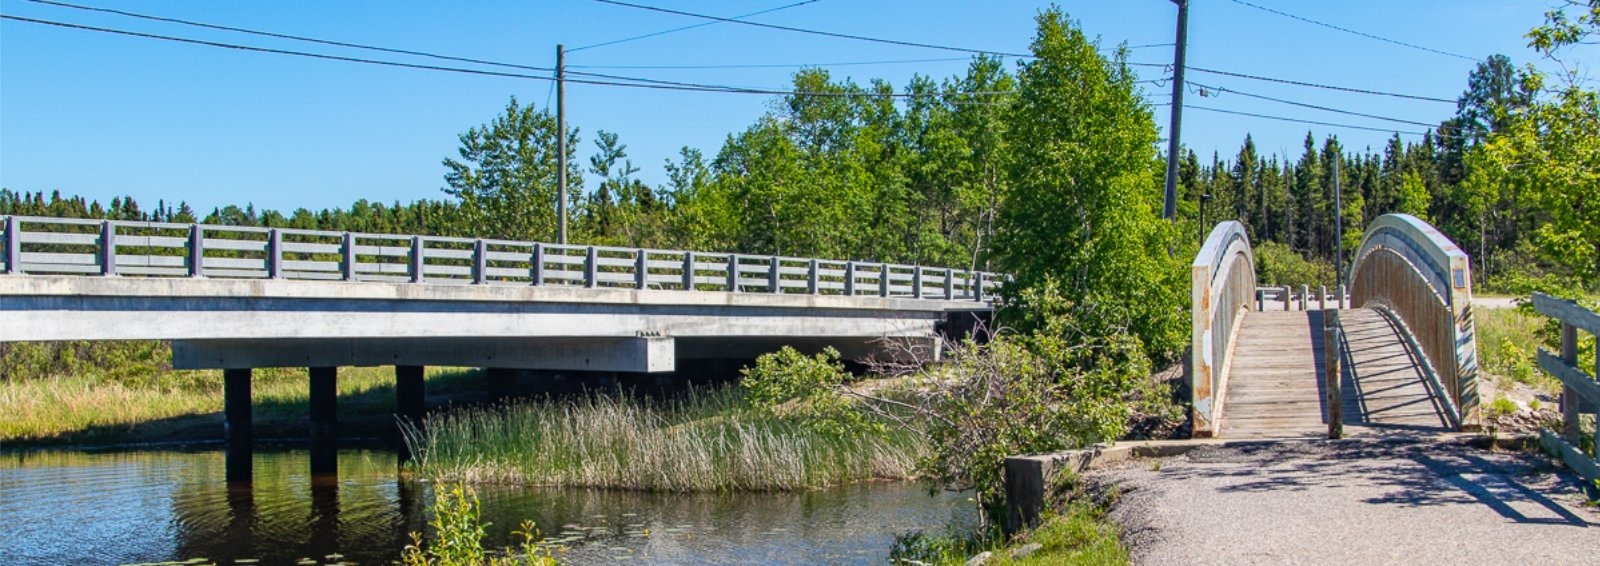 Bridge Over Pelican Creek